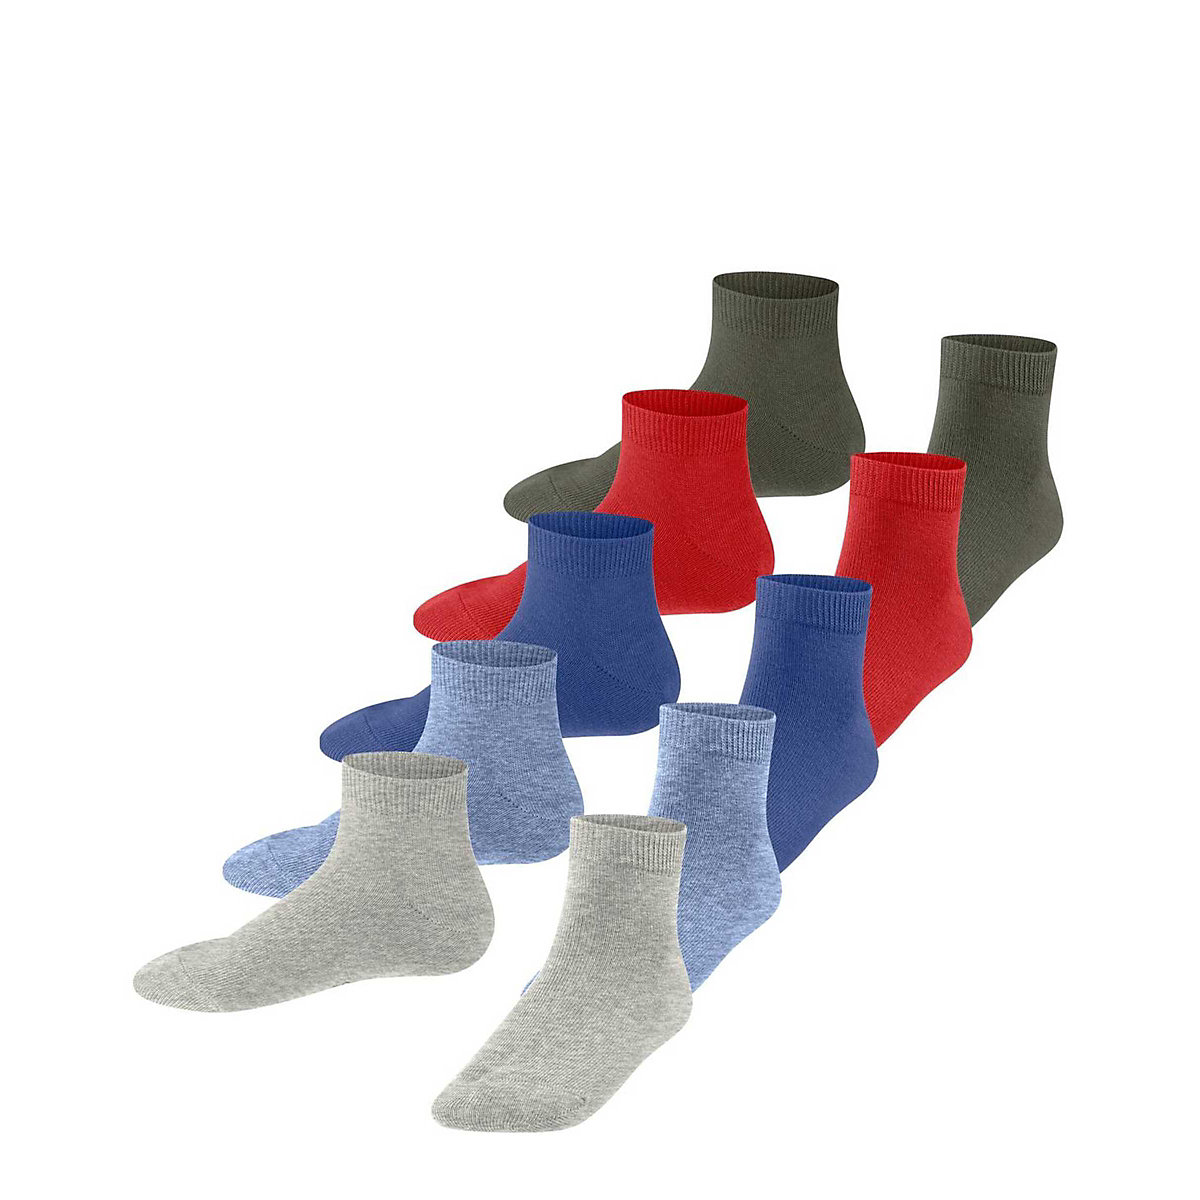 ESPRIT Kinder Socken 5er Pack Sneakersocken einfarbig Bio-Baumwolle Socken für Kinder mehrfarbig